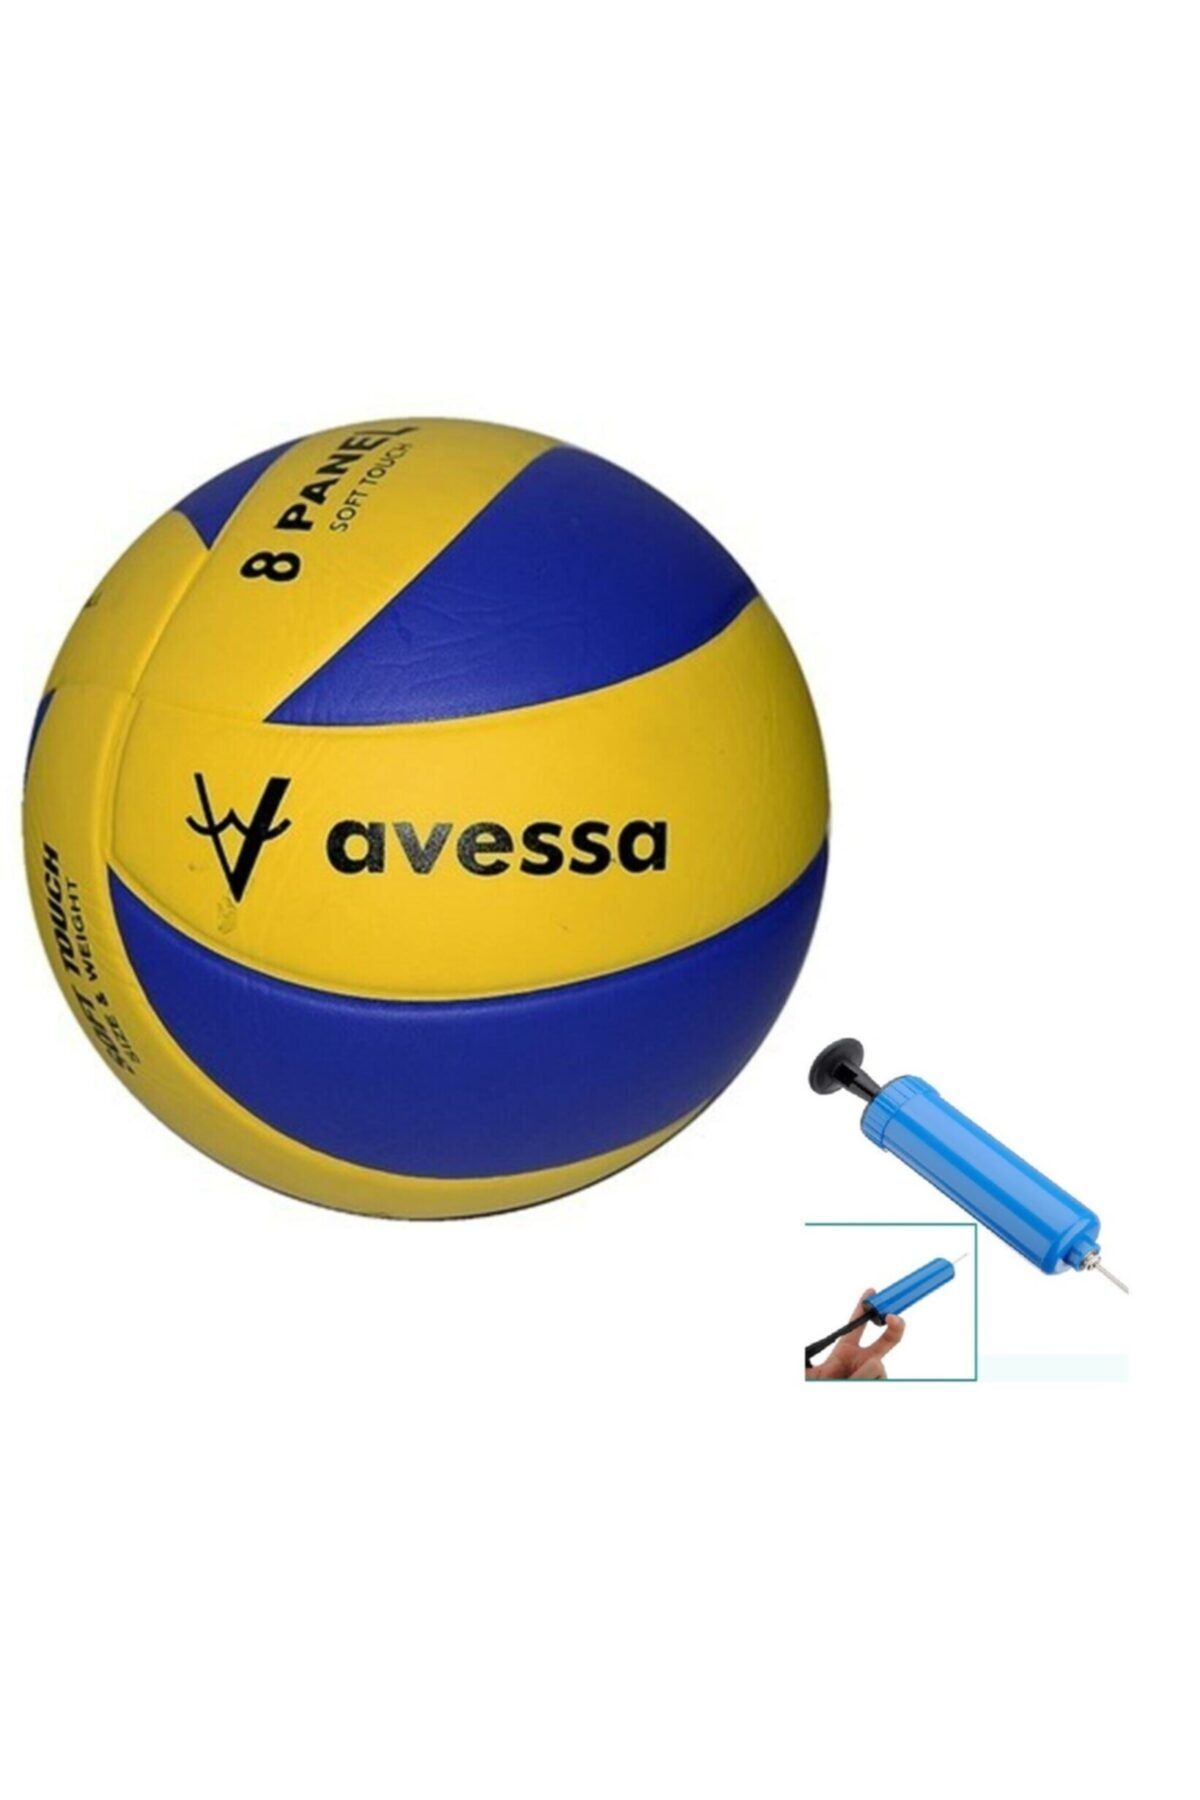 Avessa Vl400 Voleybol Topu 8 Panel Sarı Mavi 5 Numara Voleybol Topu + Top Pompası